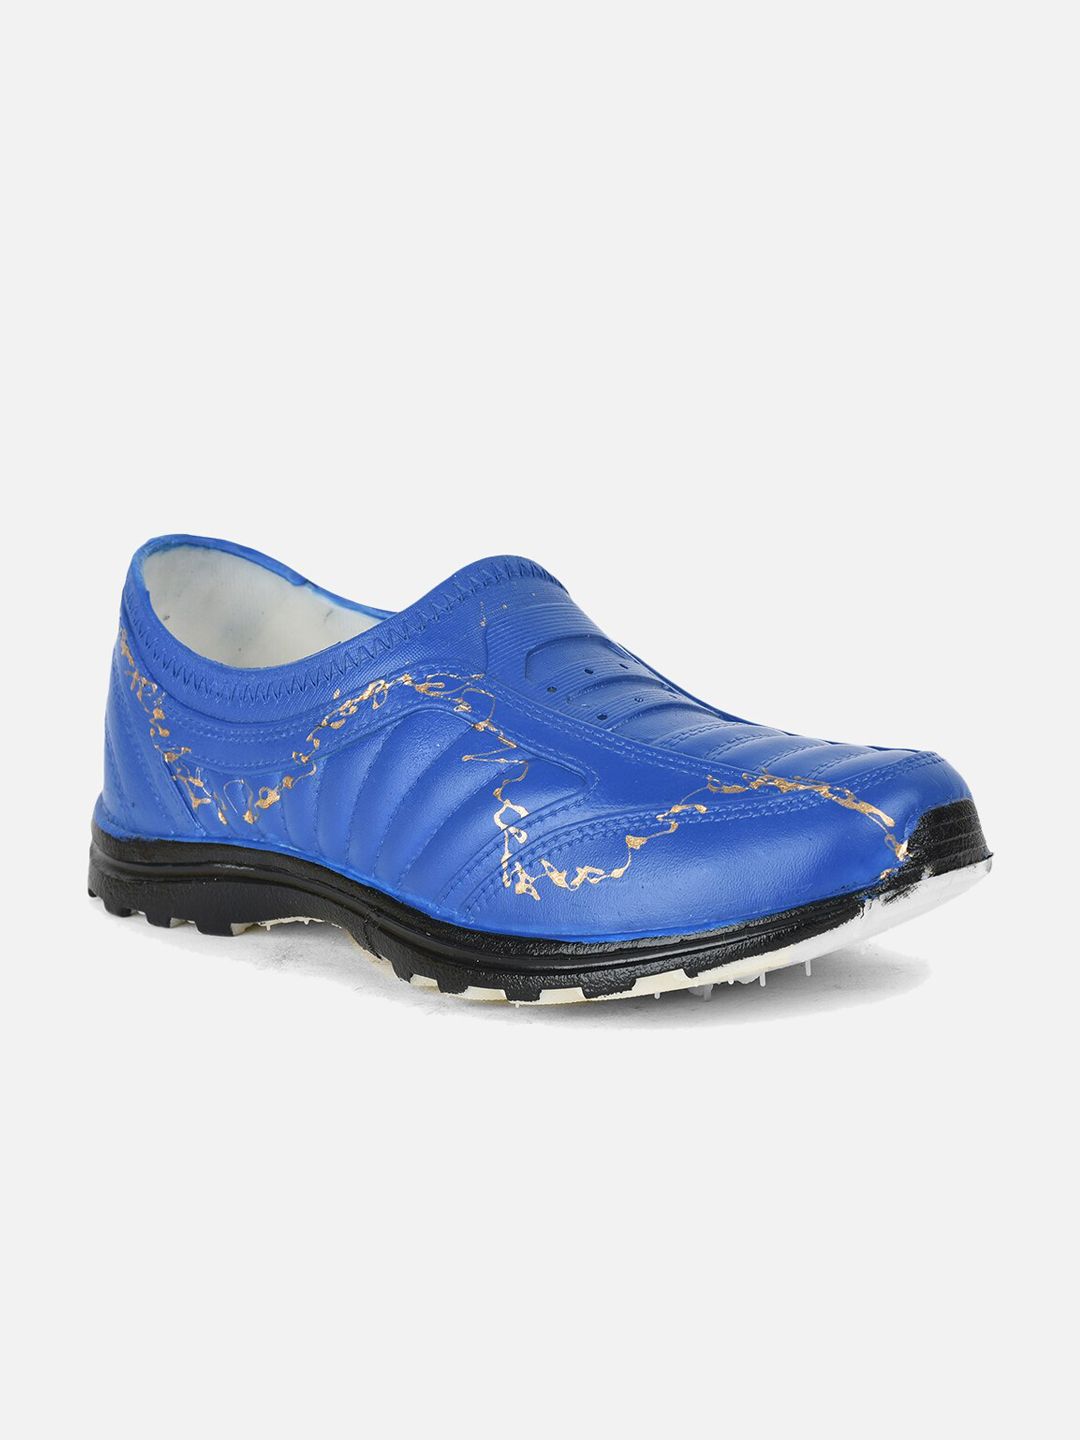 Aqualite Women Blue Textured Waterproof PVC Slip-On Sneakers Price in India